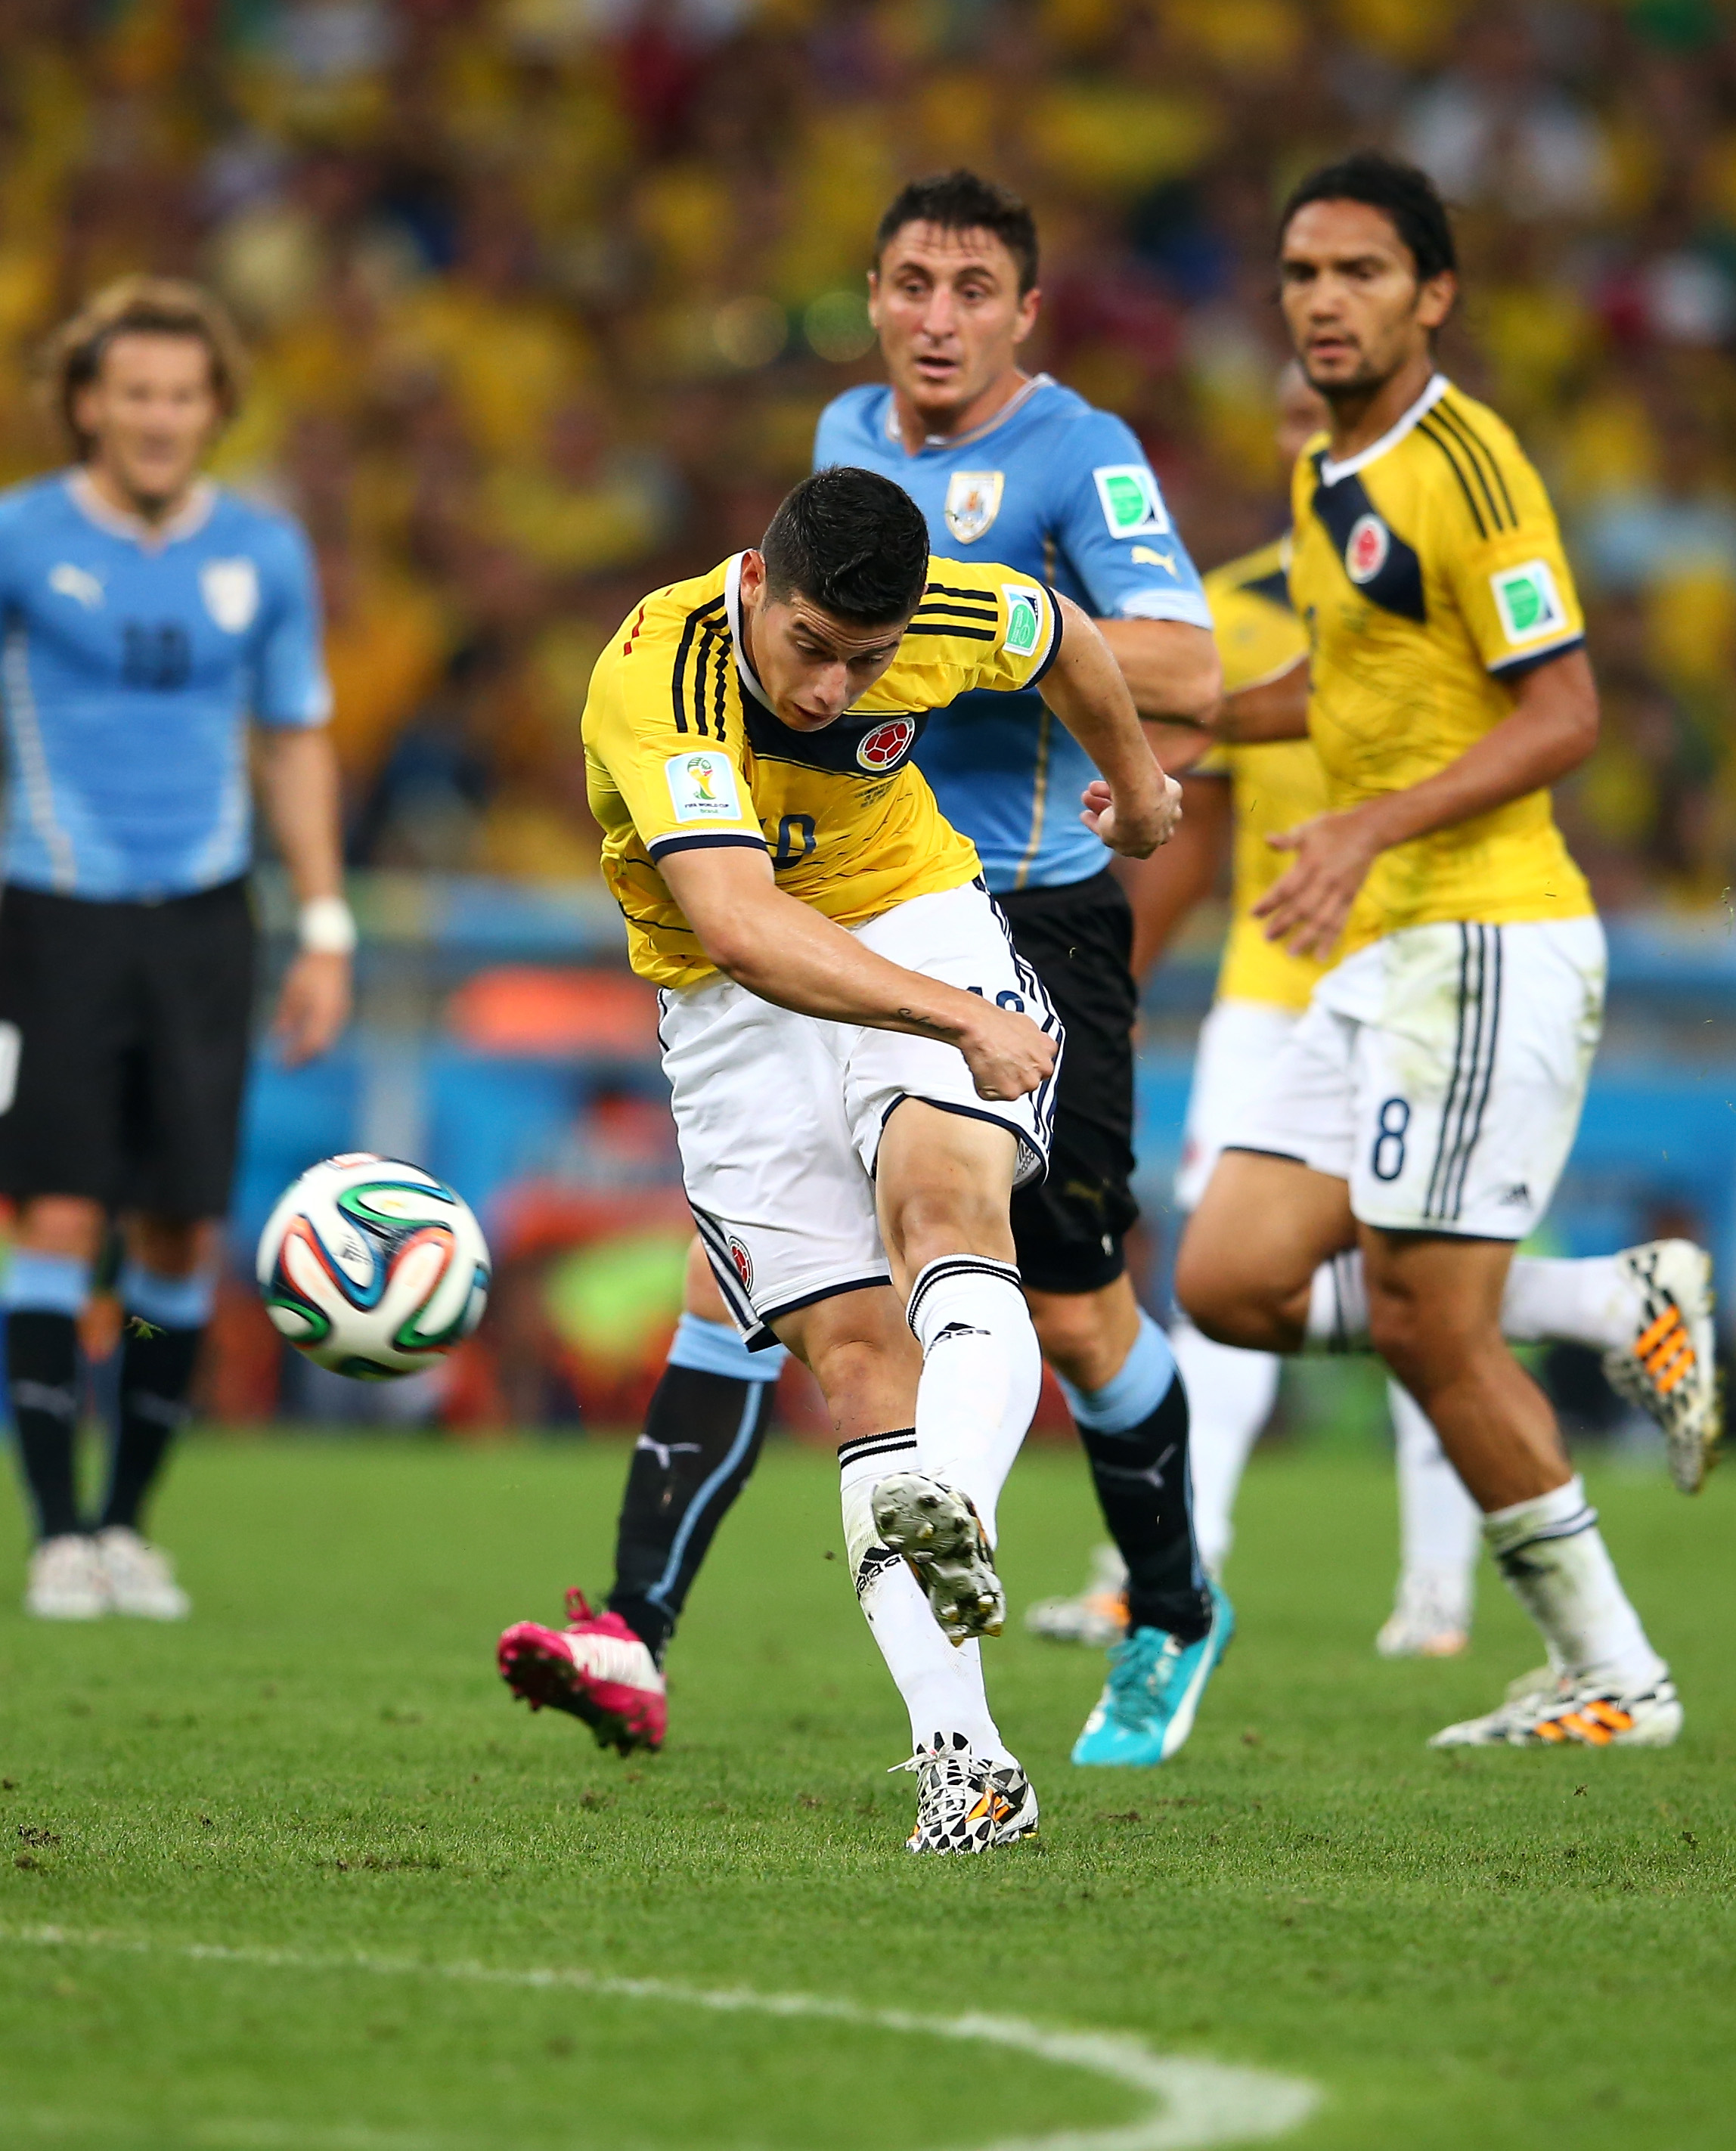 Kolumbien gegen Uruguay Update: Zwei Tore von James Rodríguez schießen Kolumbien ins Vietelfinale (Video)